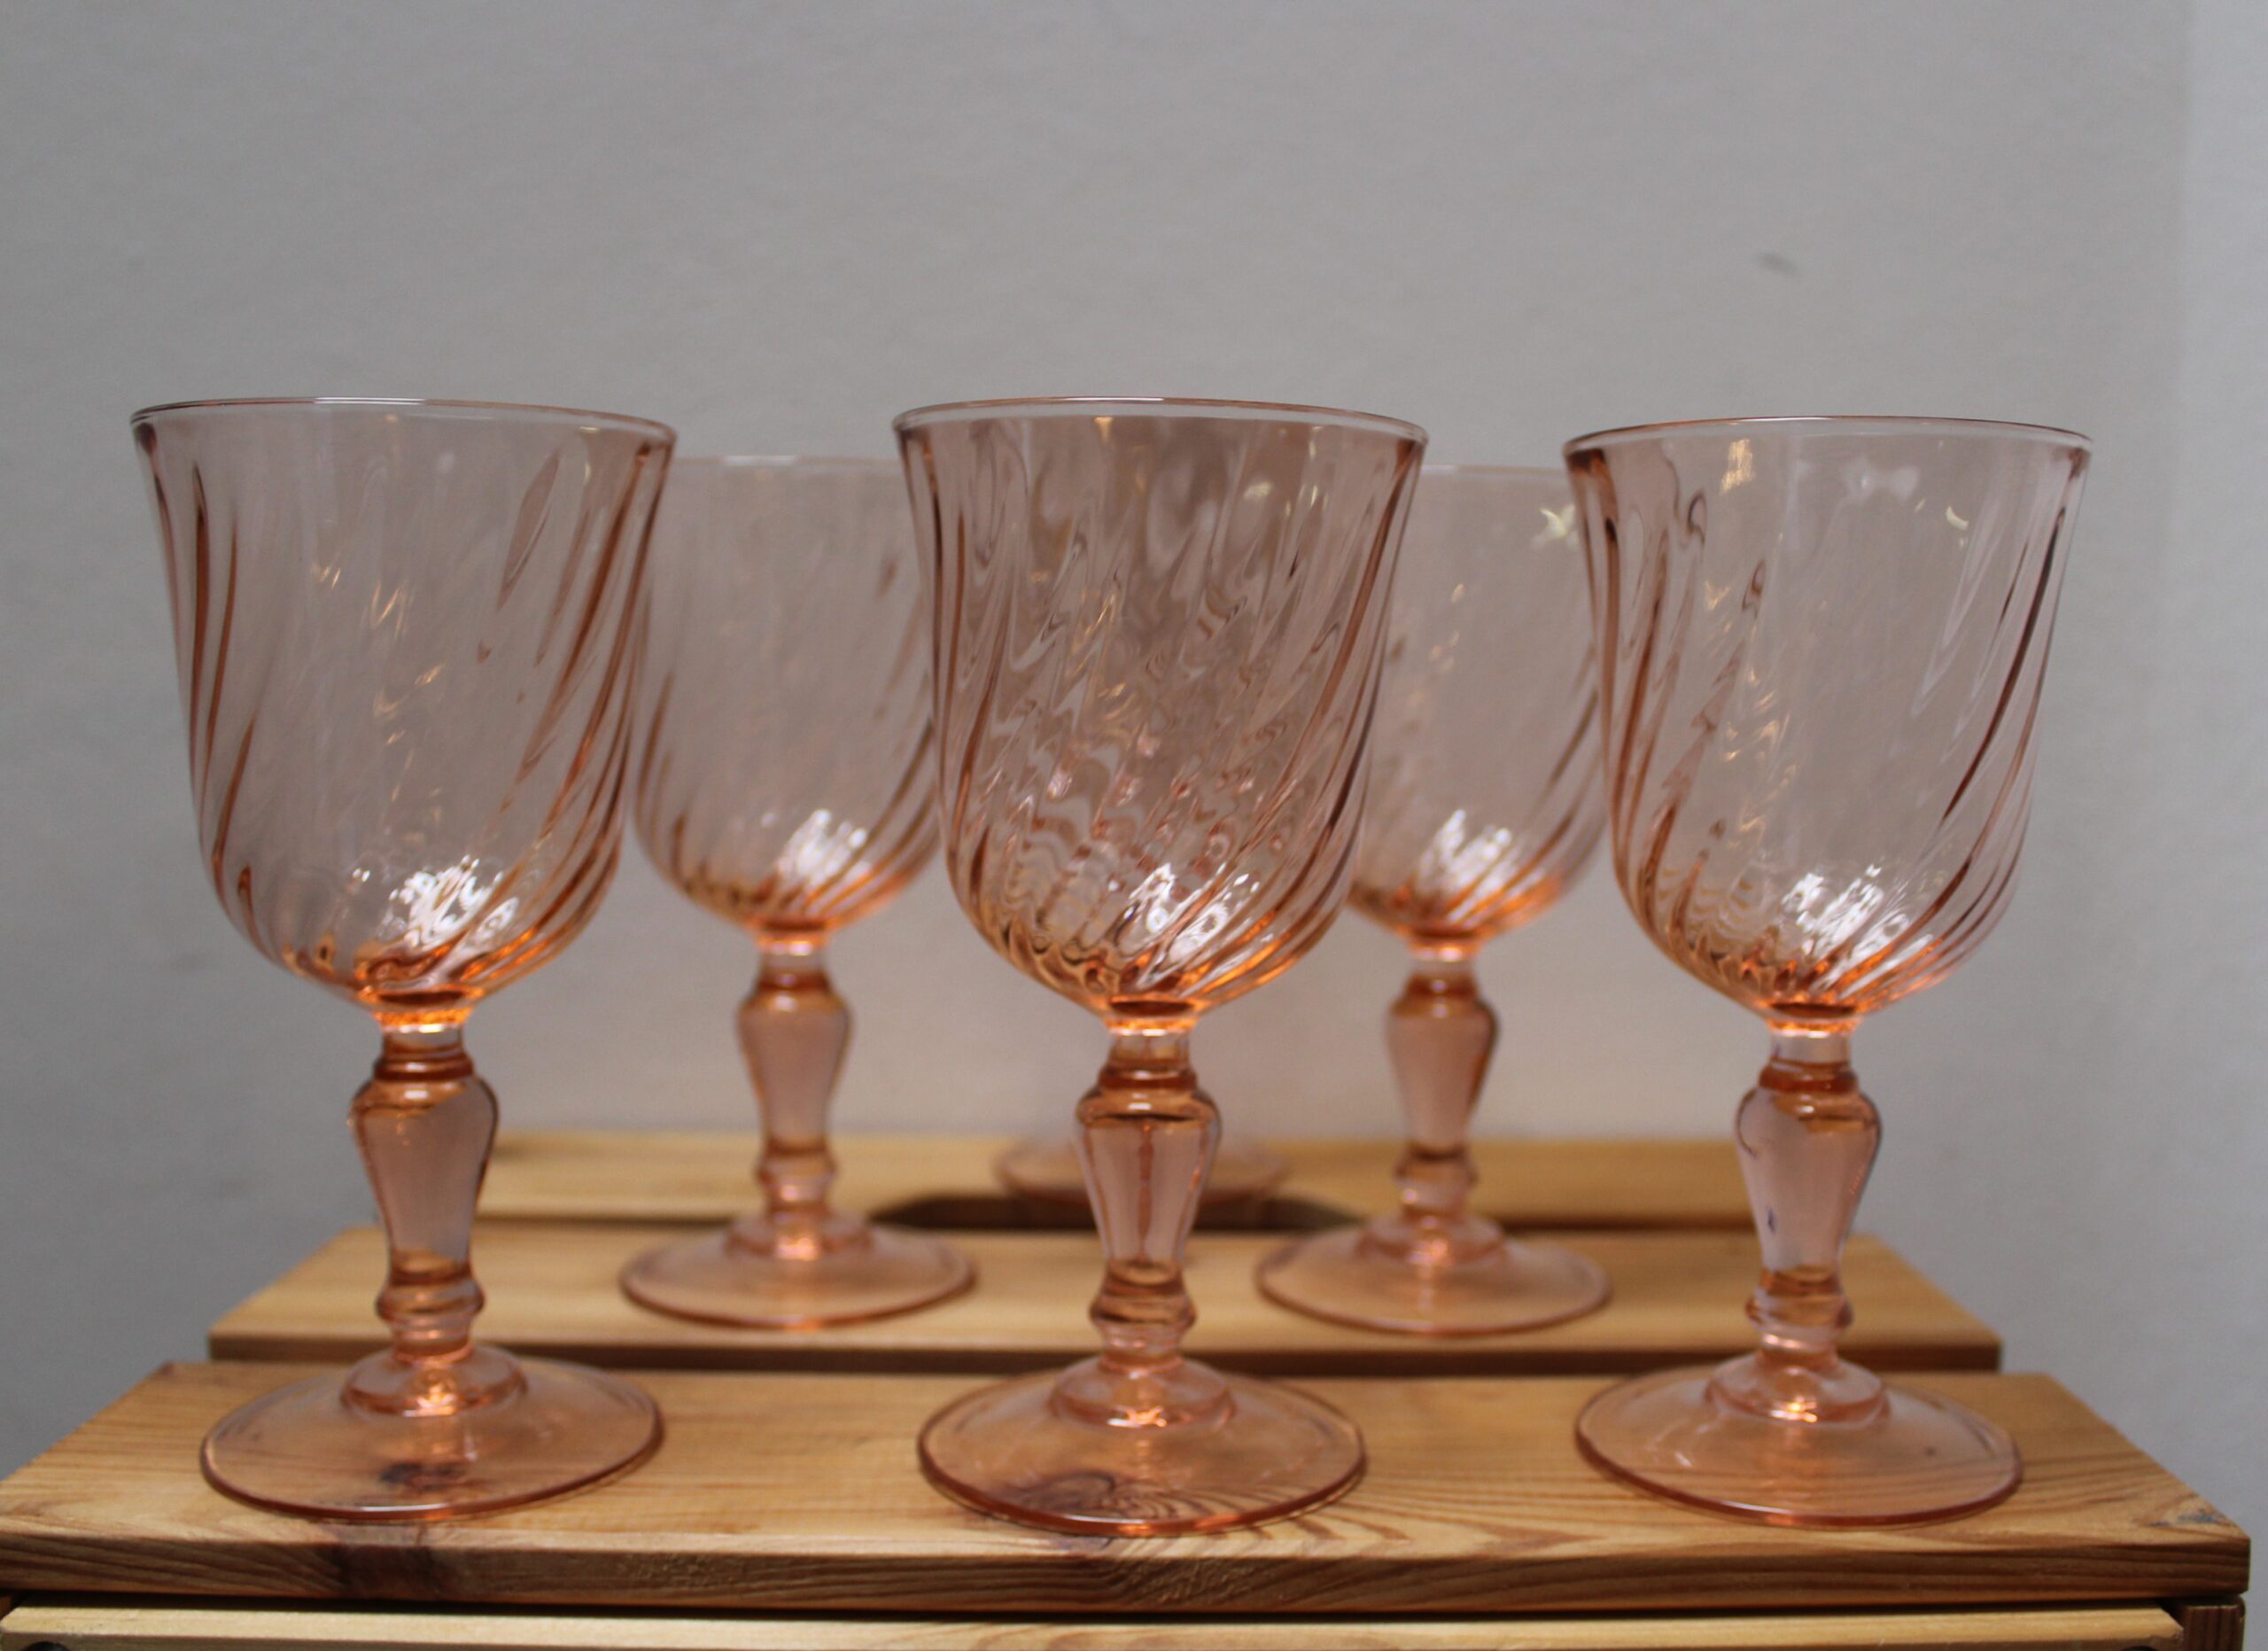 Vintage Rosaline Roze Glazen Wijnglazen, voor rode wijn - BLOSSOM Teastore, 59, 3800 Sint-Truiden 0473/886589 www.blossomteastore.be